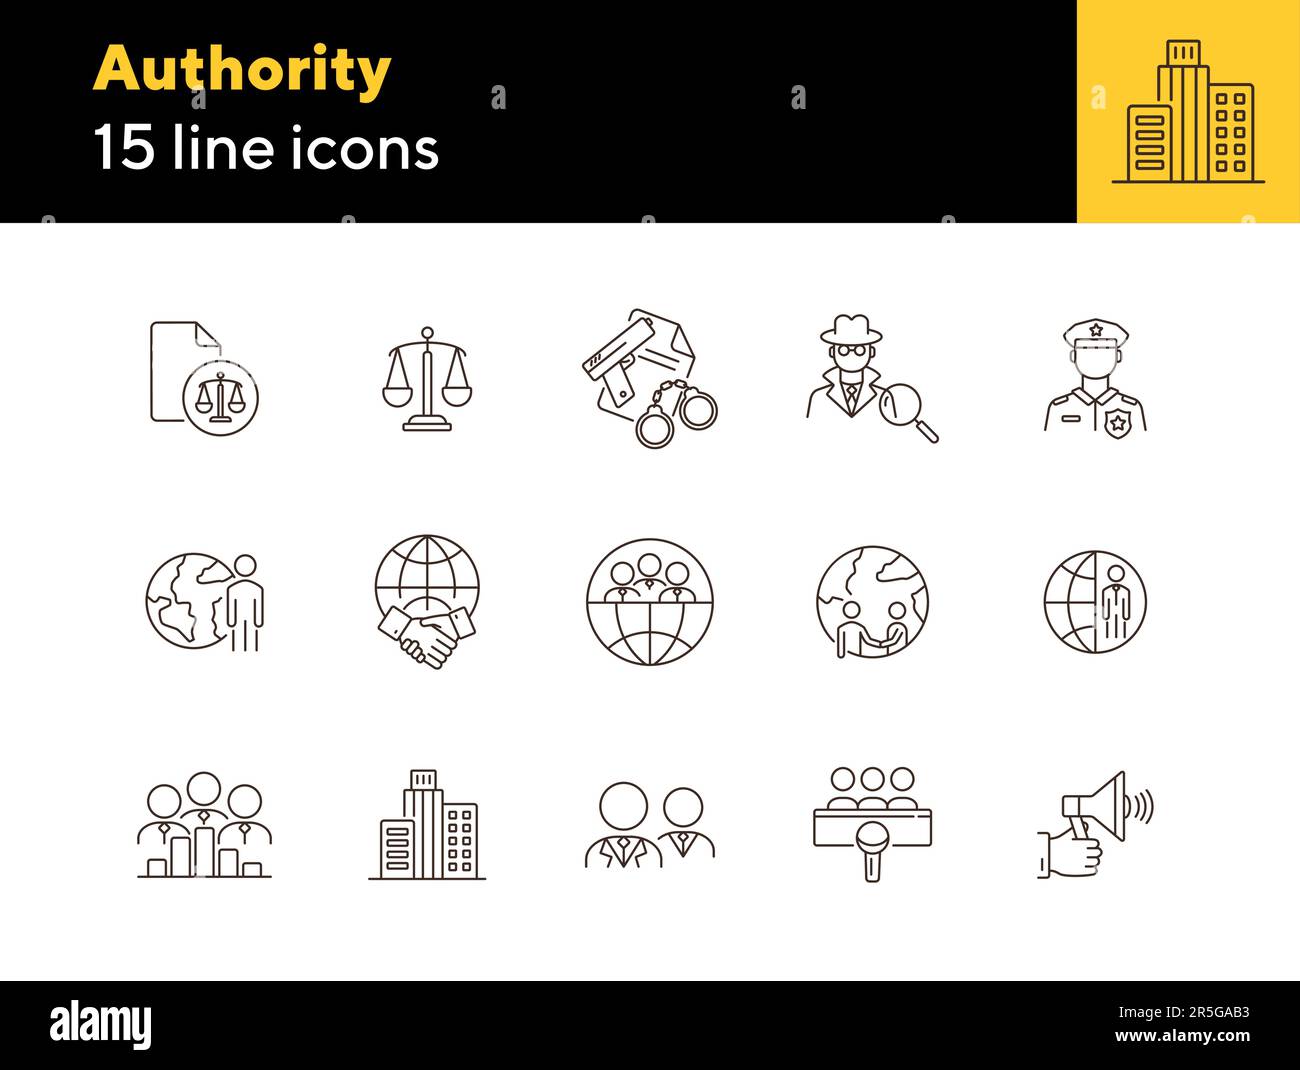 Authority line icon set Stock Vector